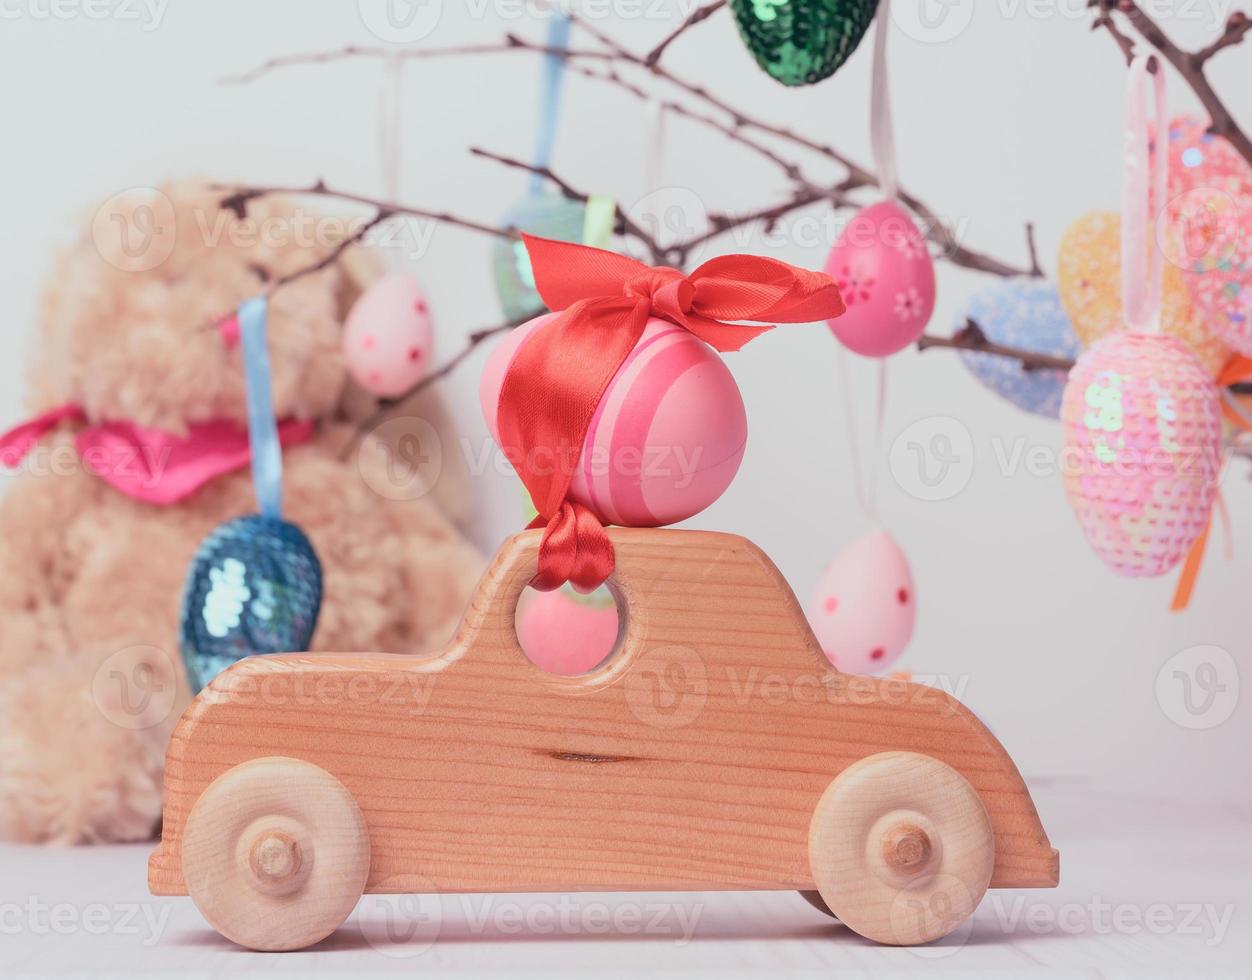 Spielzeugauto aus Holz mit einem rosafarbenen Osterei, das mit einem roten Band befestigt ist foto